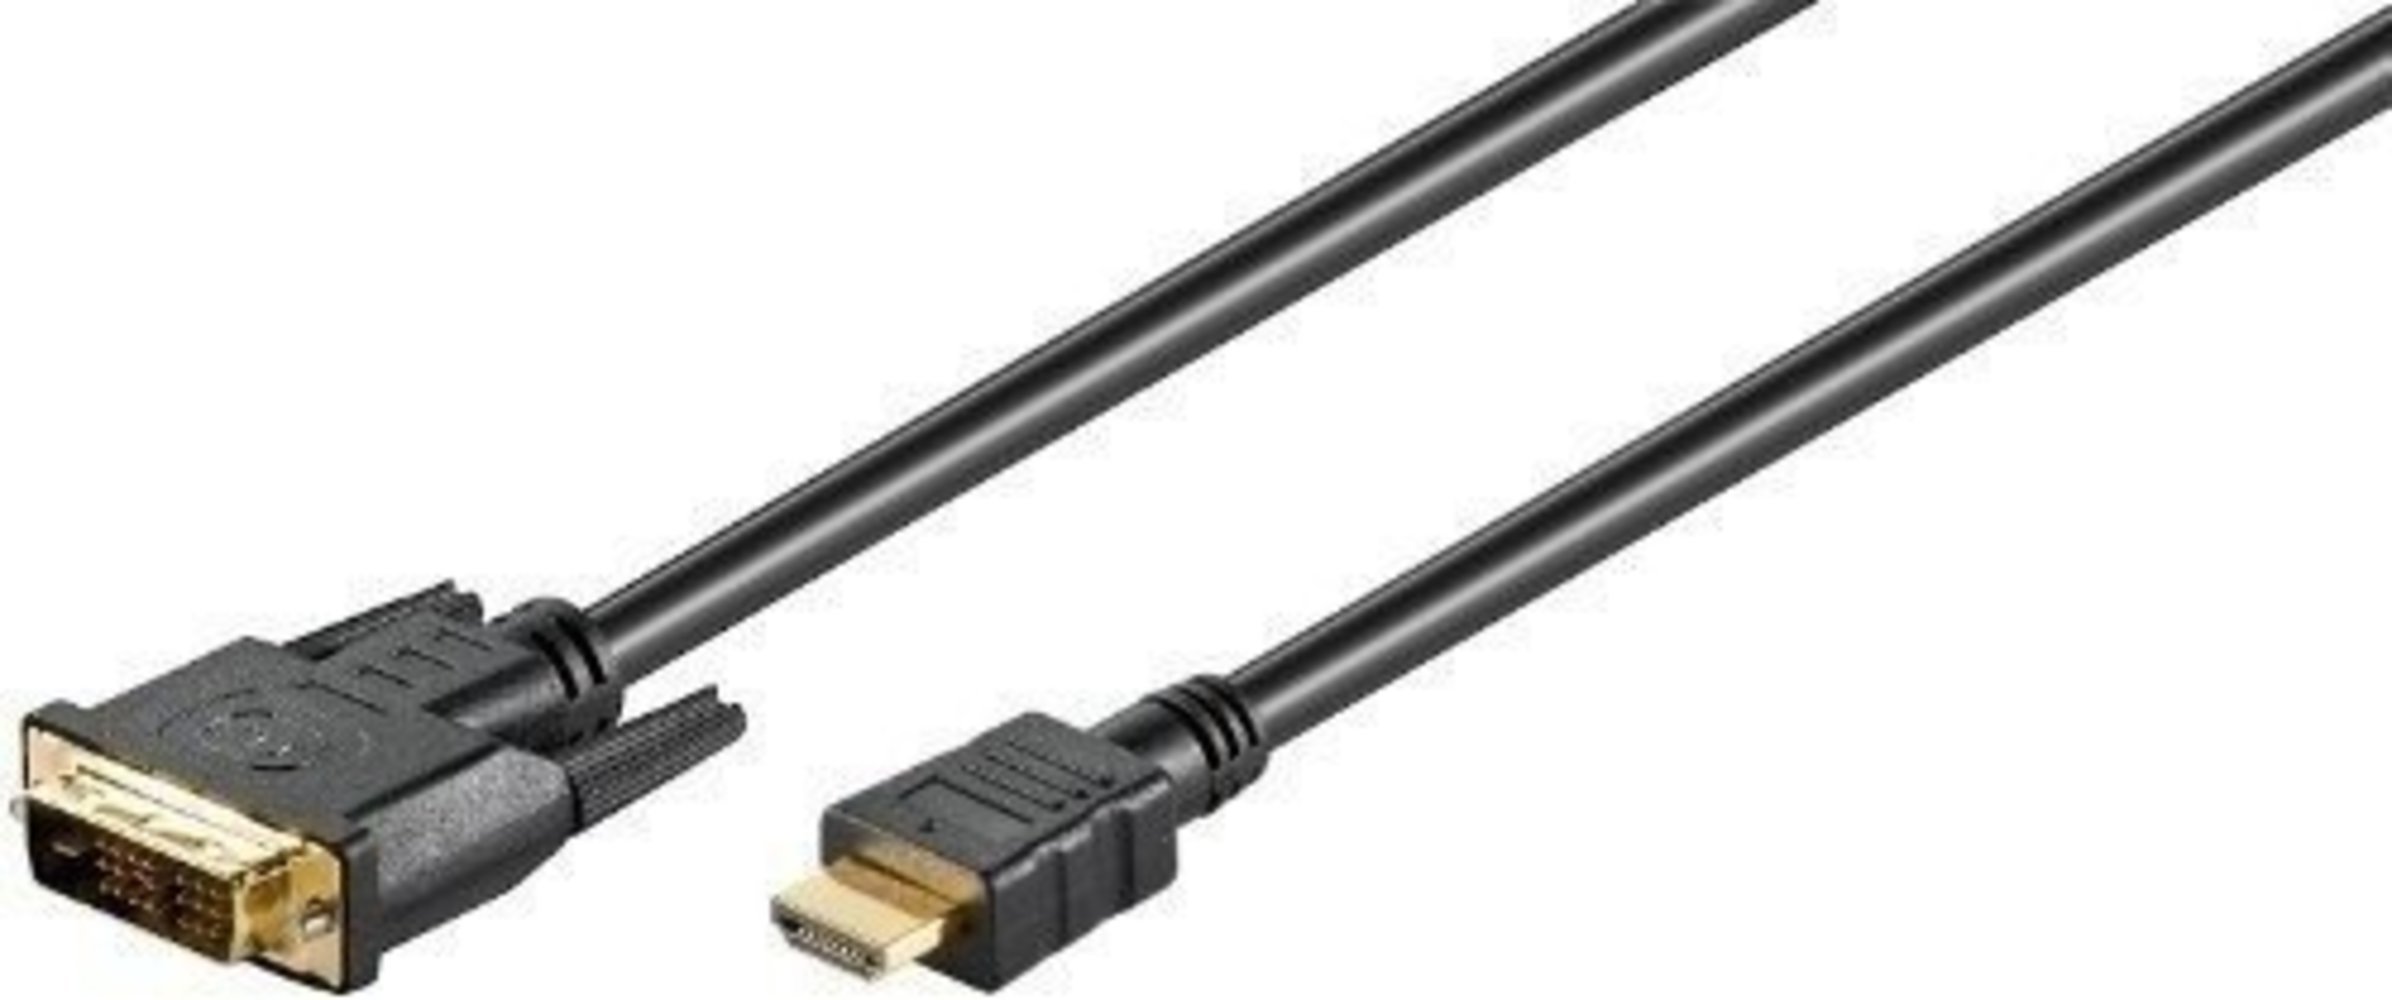 3 Meter langes HDMI/DVI-D Kabel in Schwarz von Mcab